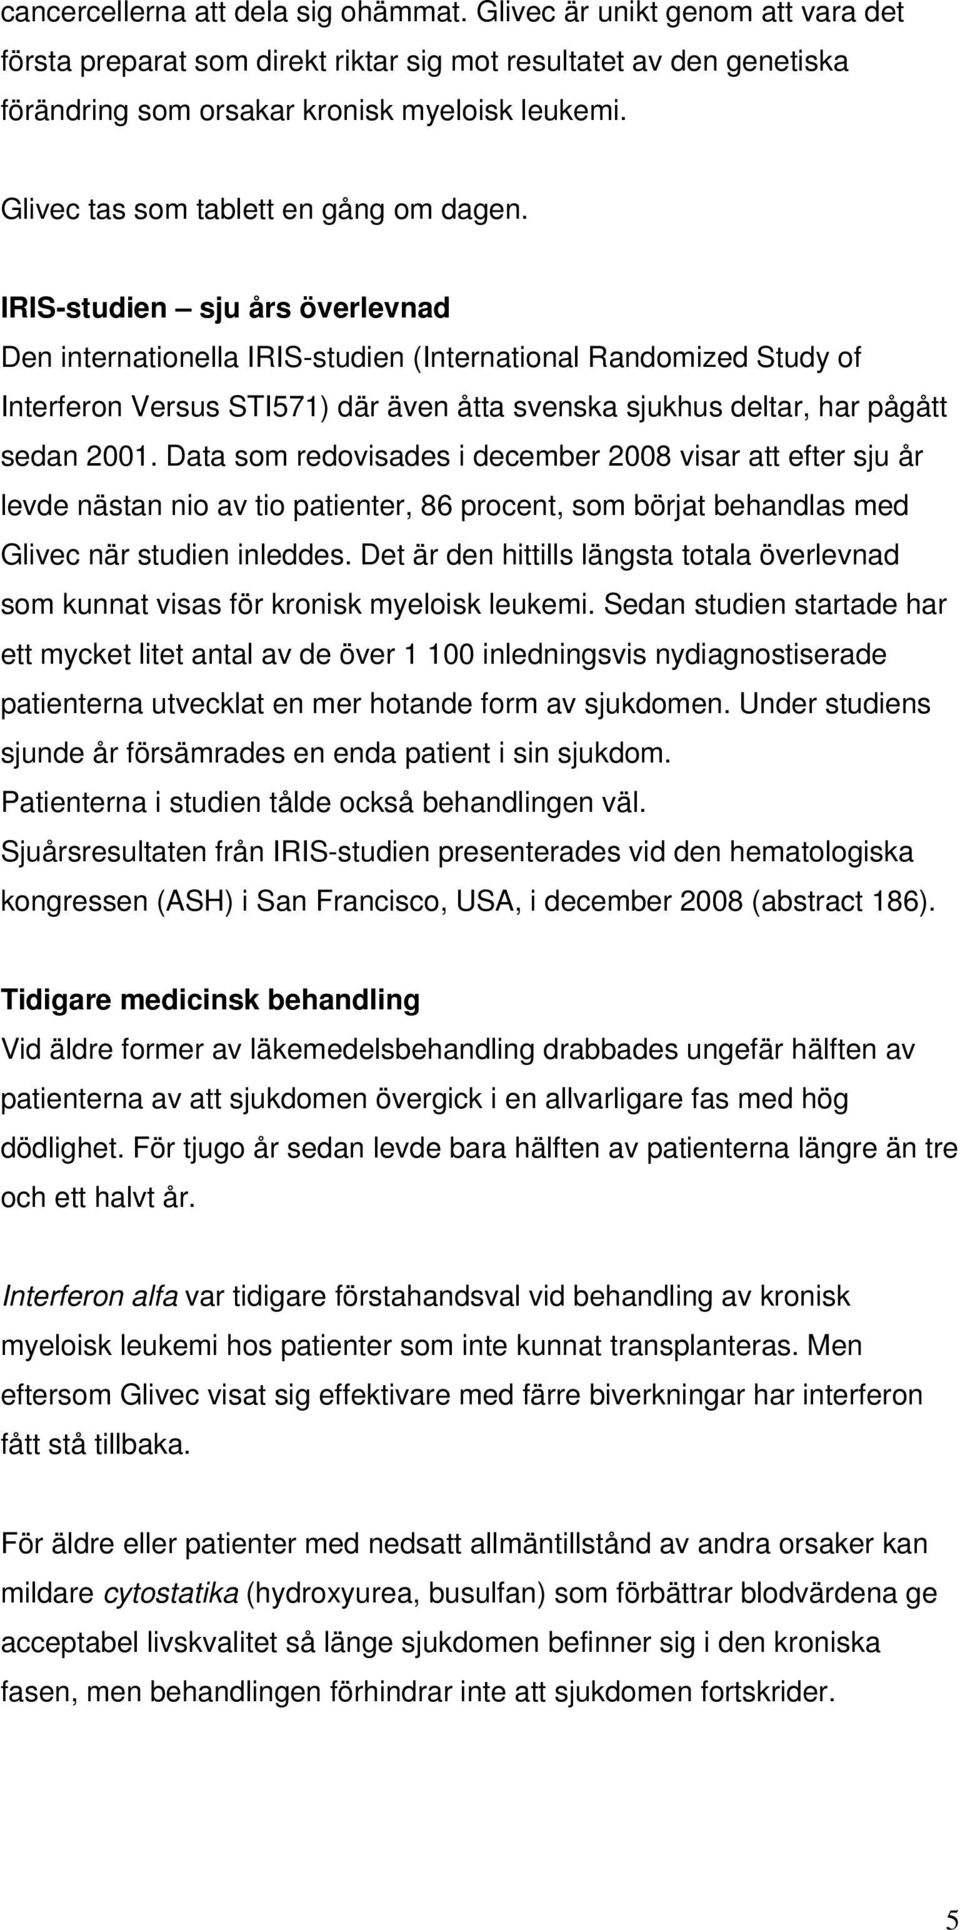 IRIS-studien sju års överlevnad Den internationella IRIS-studien (International Randomized Study of Interferon Versus STI571) där även åtta svenska sjukhus deltar, har pågått sedan 2001.